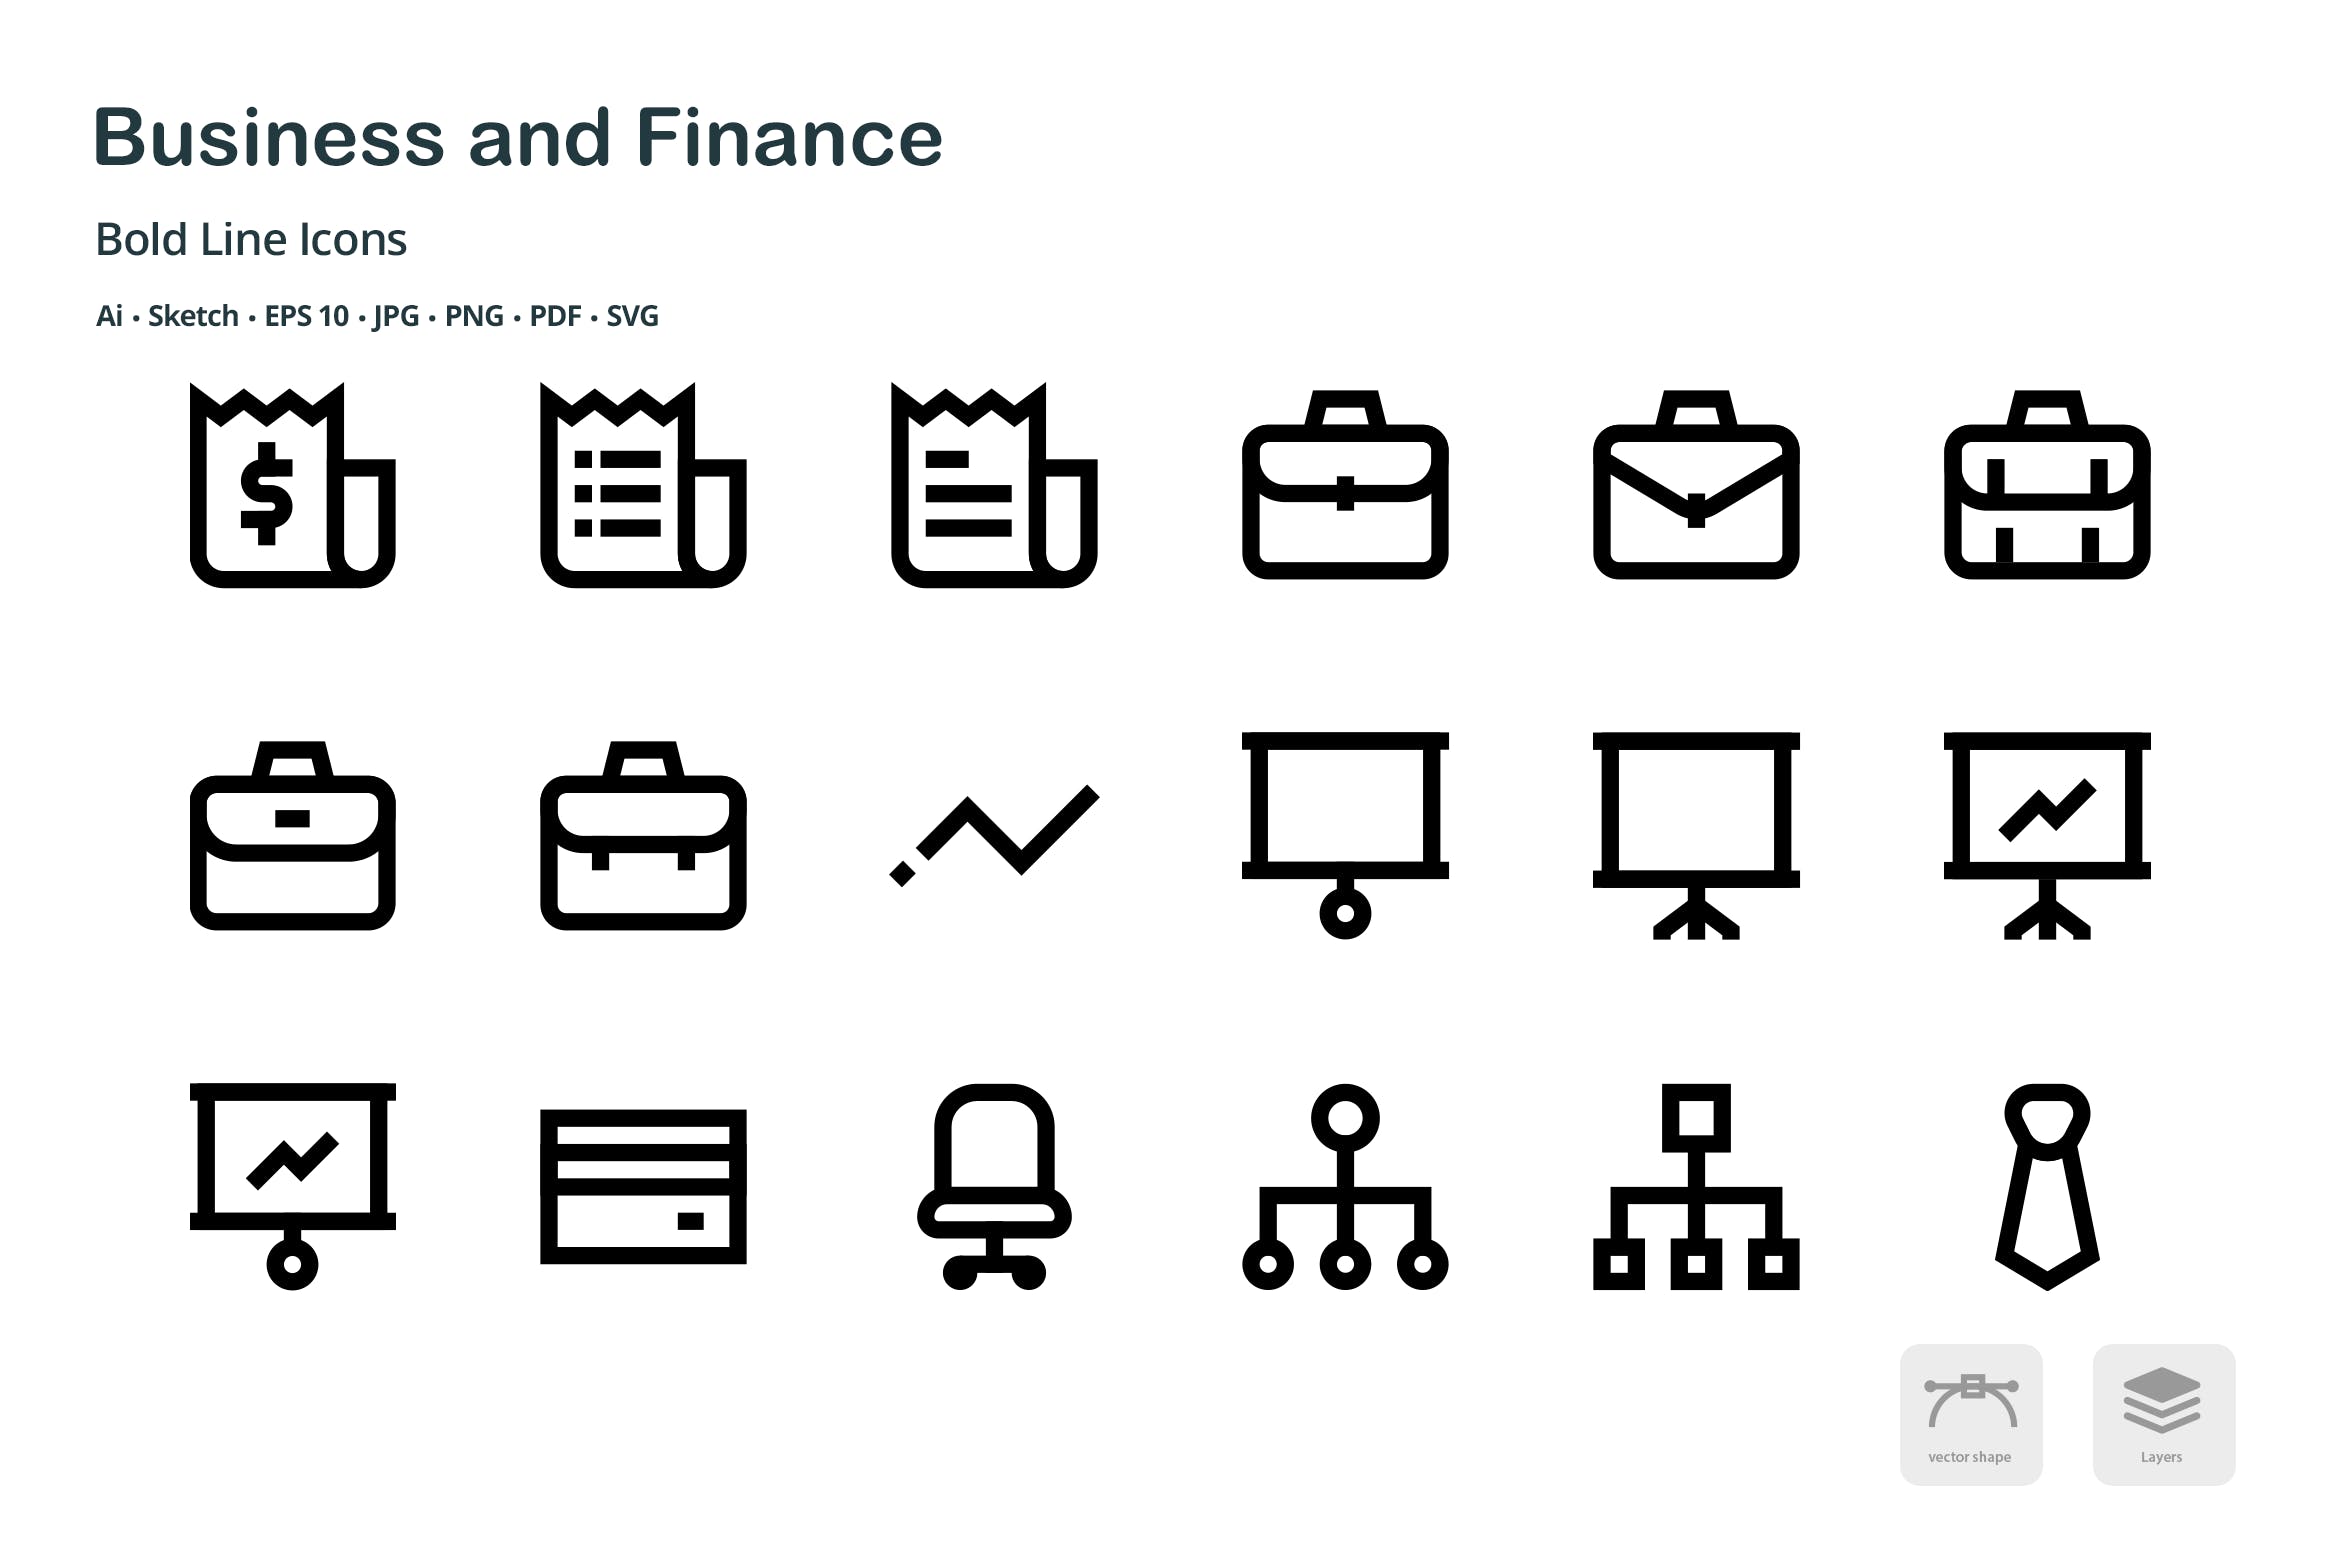 商业&金融主题粗线条风格矢量第一素材精选图标 Business and Finance Mini Bold Line Icons插图